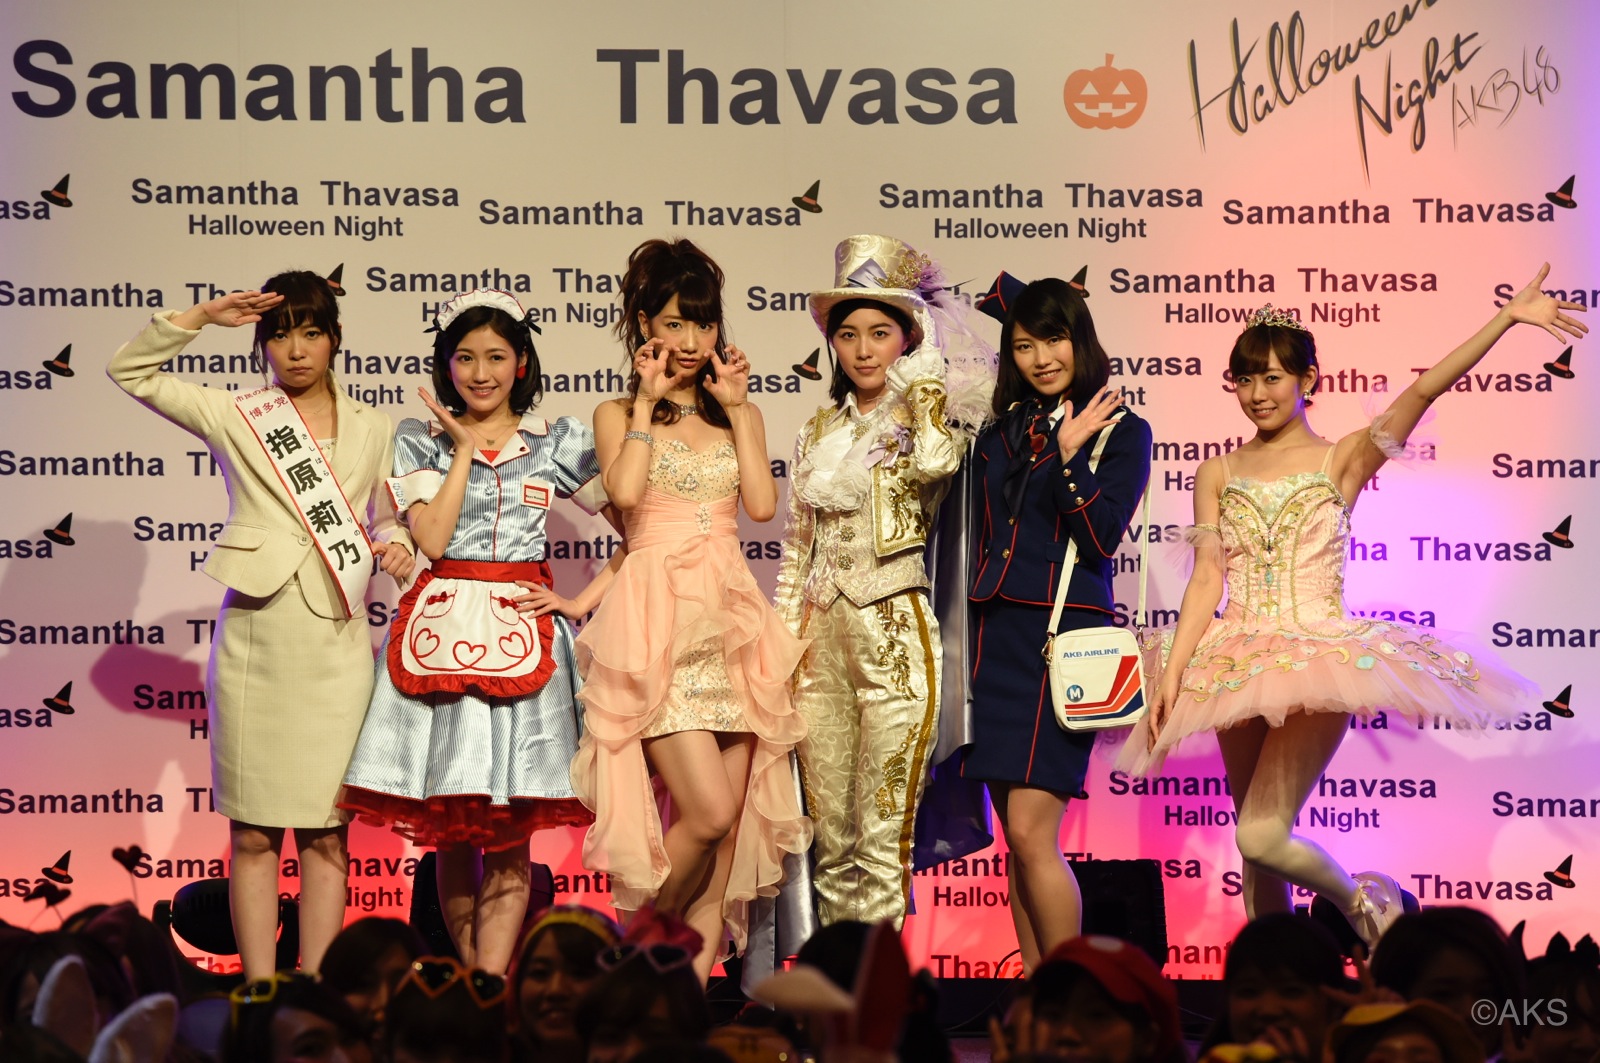 AKB48 Celebrates Halloween Night with Samantha Thavasa’s Gorgeous Girls!